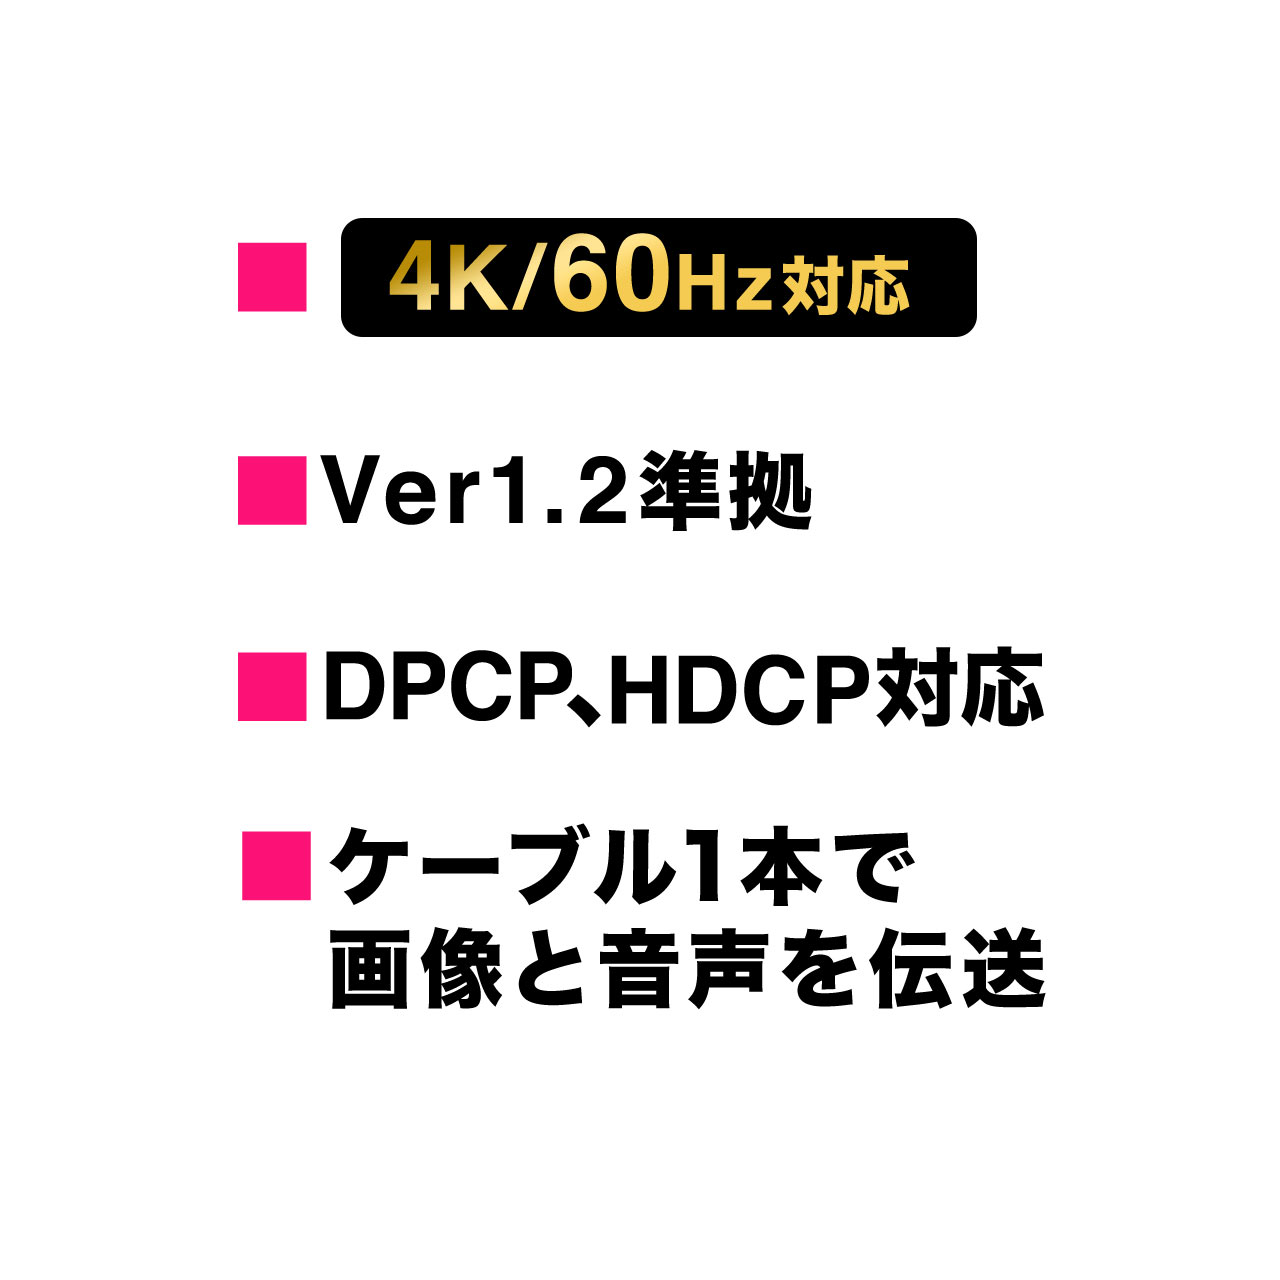 Mini DisplayPort-DisplayPortϊA_v^P[u(1mE4K/60HzΉEThunderboltϊEo[W1.2EubNj 500-KC029-1